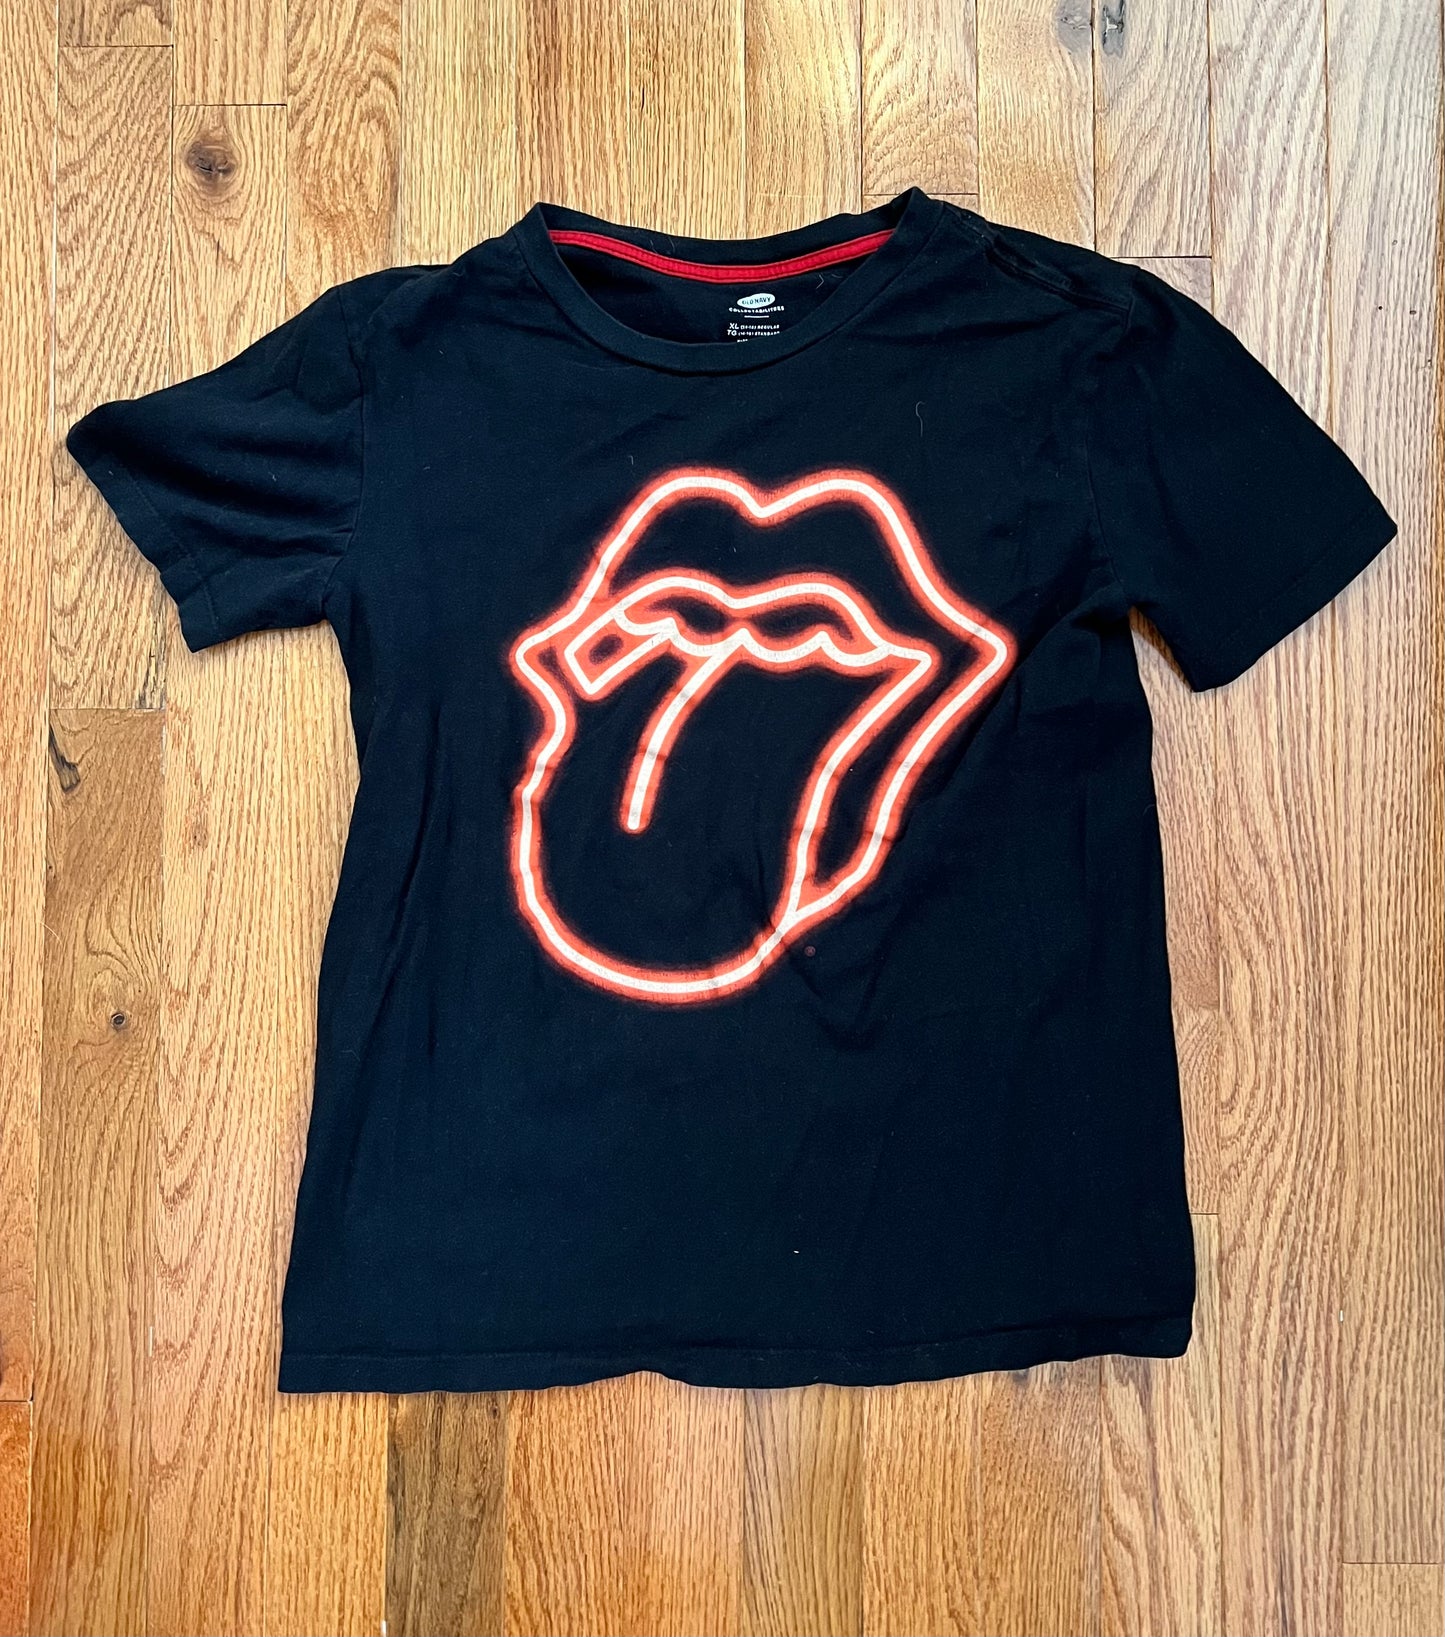 Boys Rolling Stones tshirt- XL (14-16)